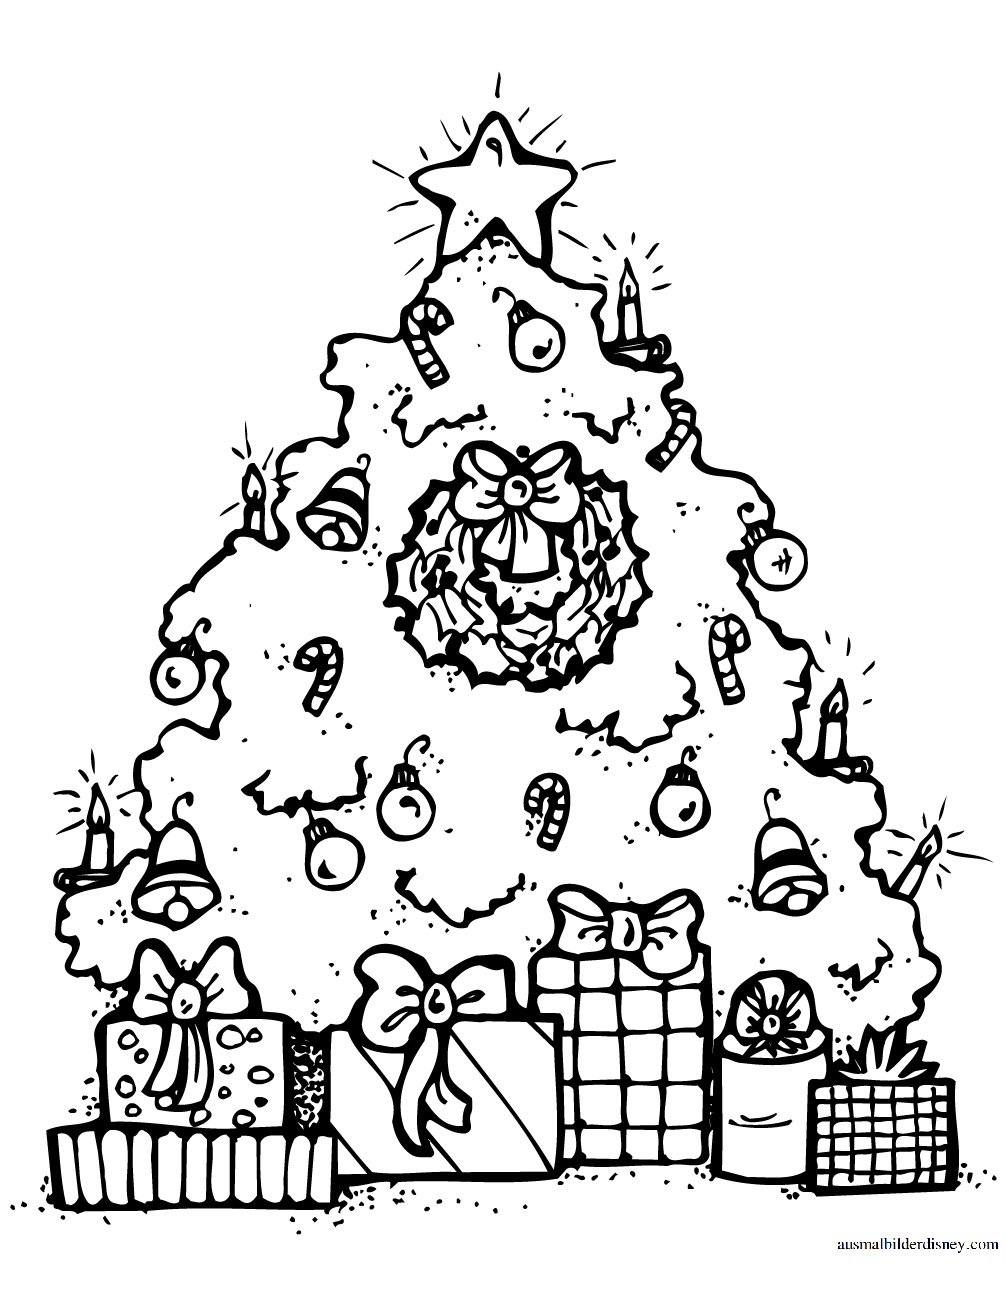 Ausmalbild Weihnachtsbaum Kostenlos Zum Ausdrucken über Ausmalbild Weihnachtsbaum